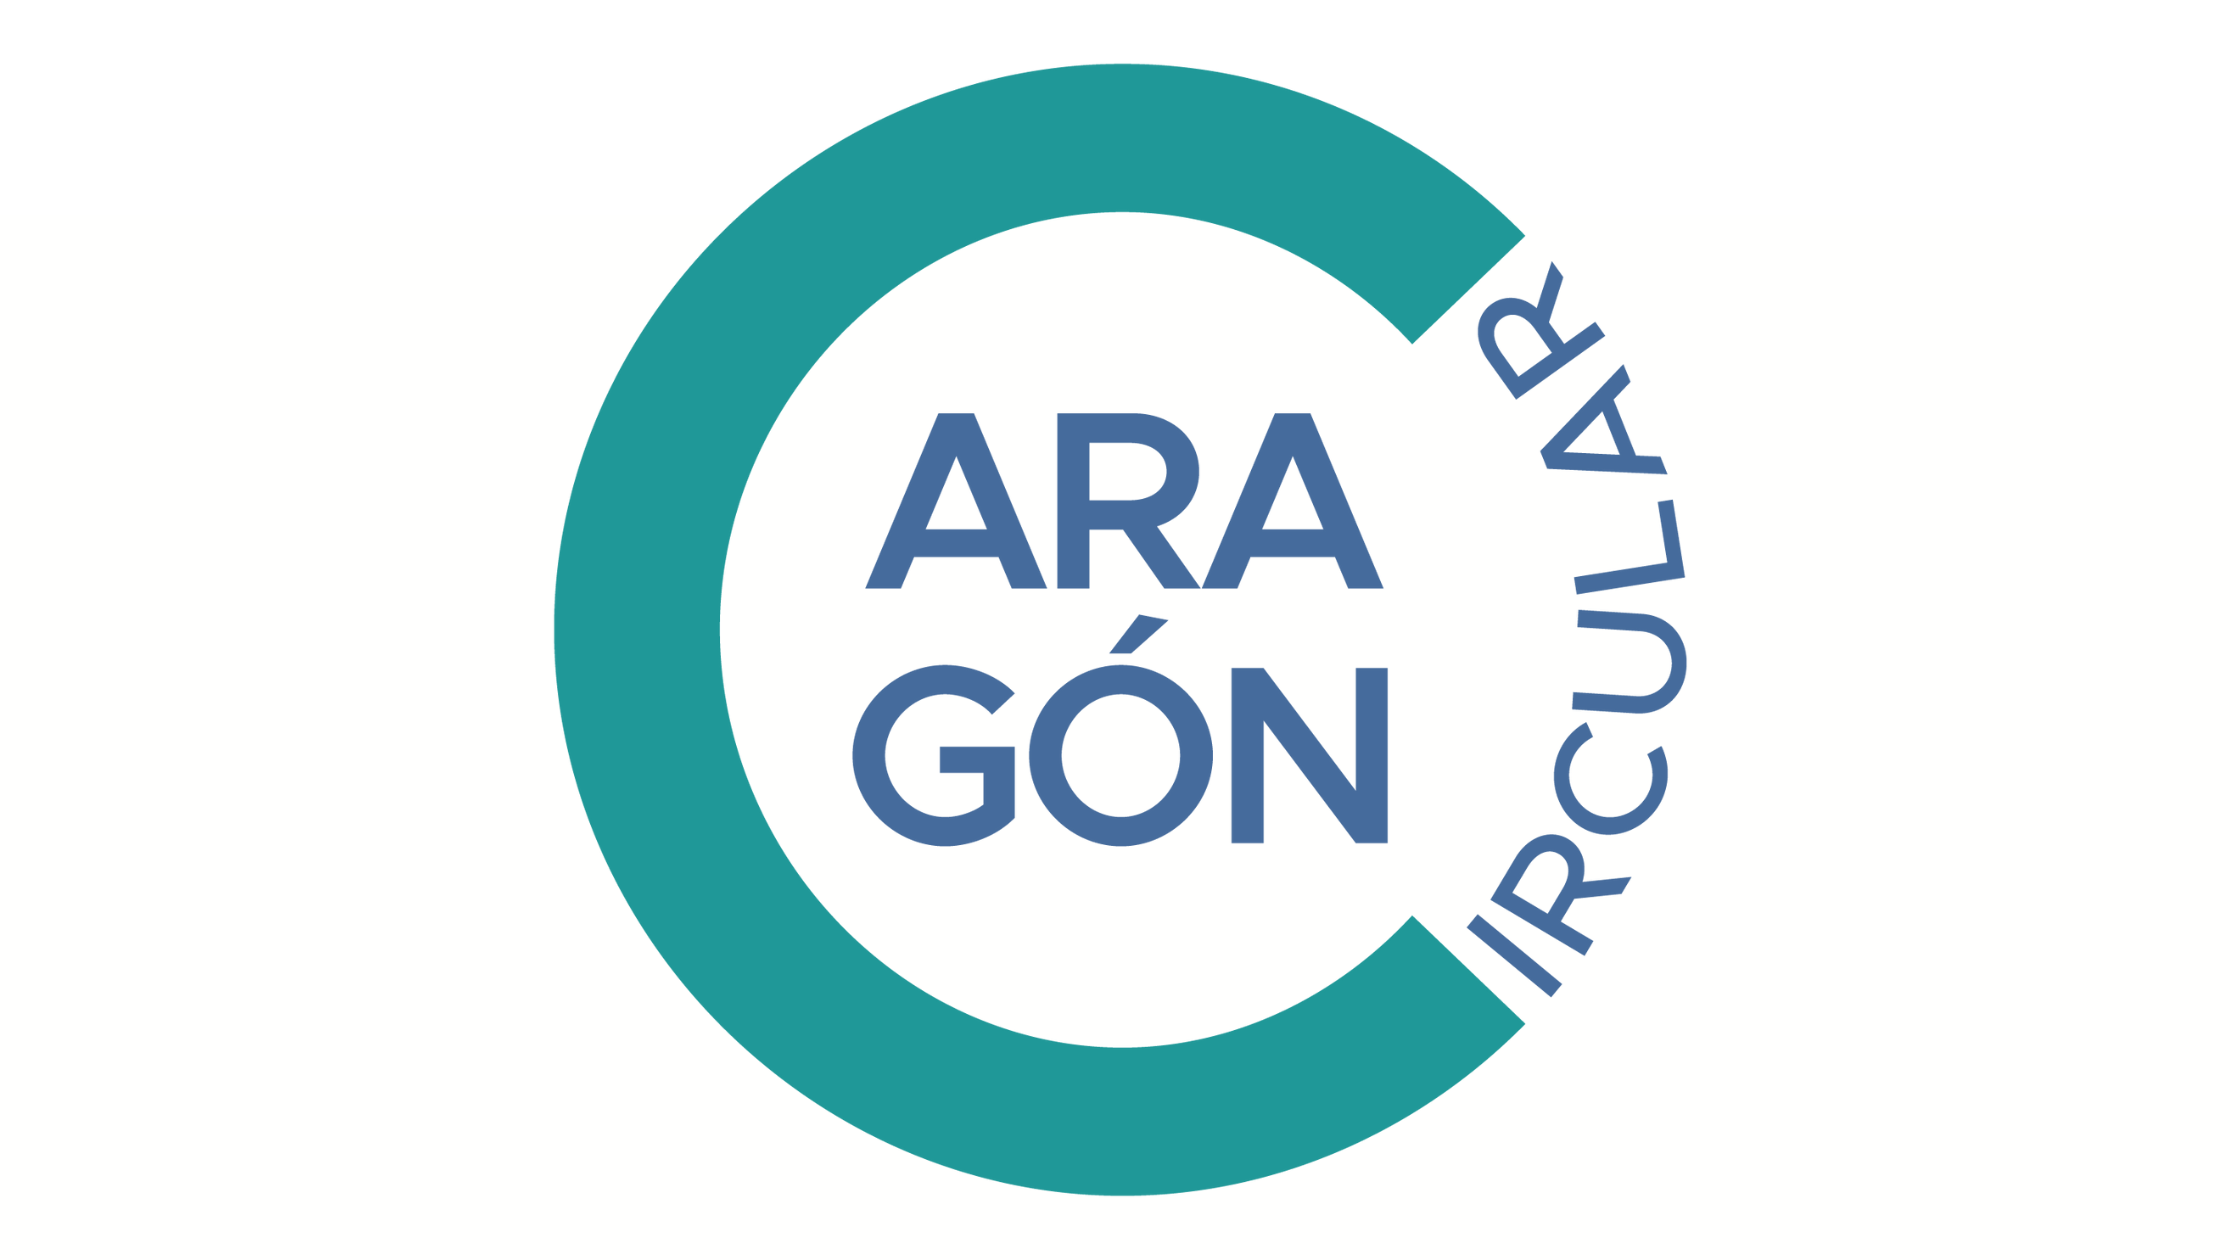 Abierta la convocatoria de subvenciones para realizar en Aragón proyectos empresariales que incluyan desarrollo experimental y/o investigación industrial en economía circular